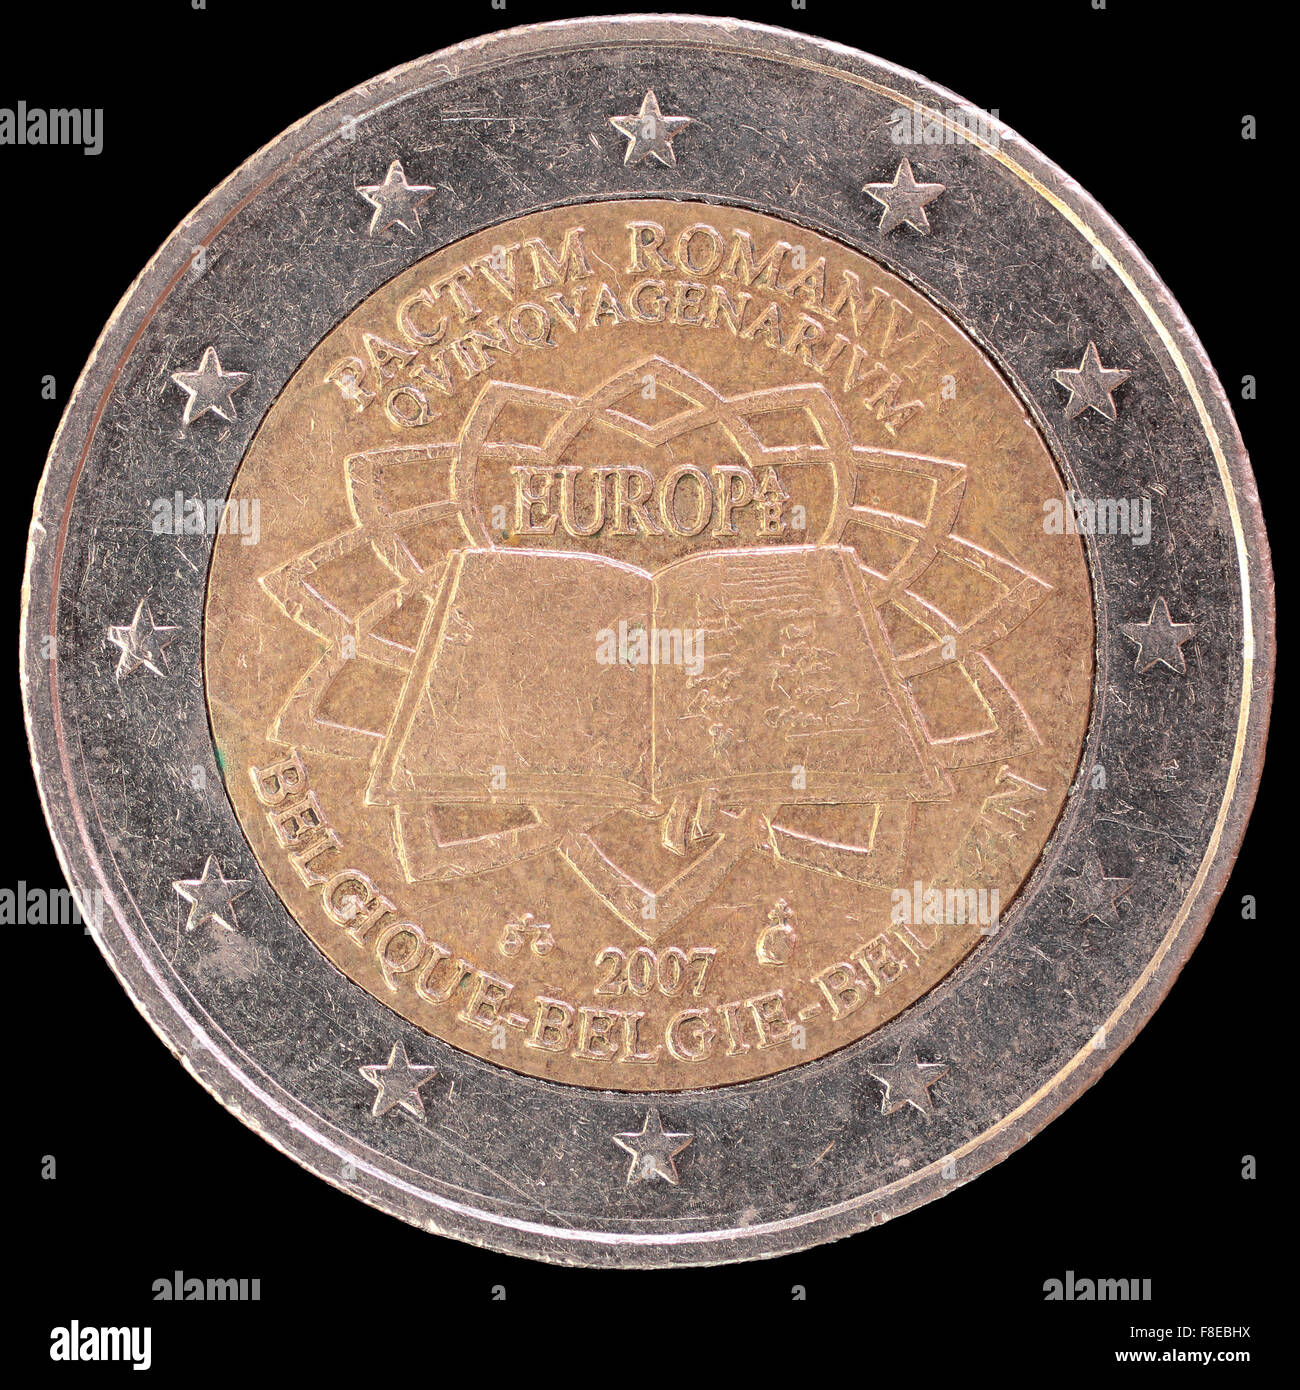 Eine Festschrift verteilt zwei-Euro-Münze in 2007 feiert den Jahrestag der Römischen Verträge durch Belgien ausgestellt. Bild isol Stockfoto